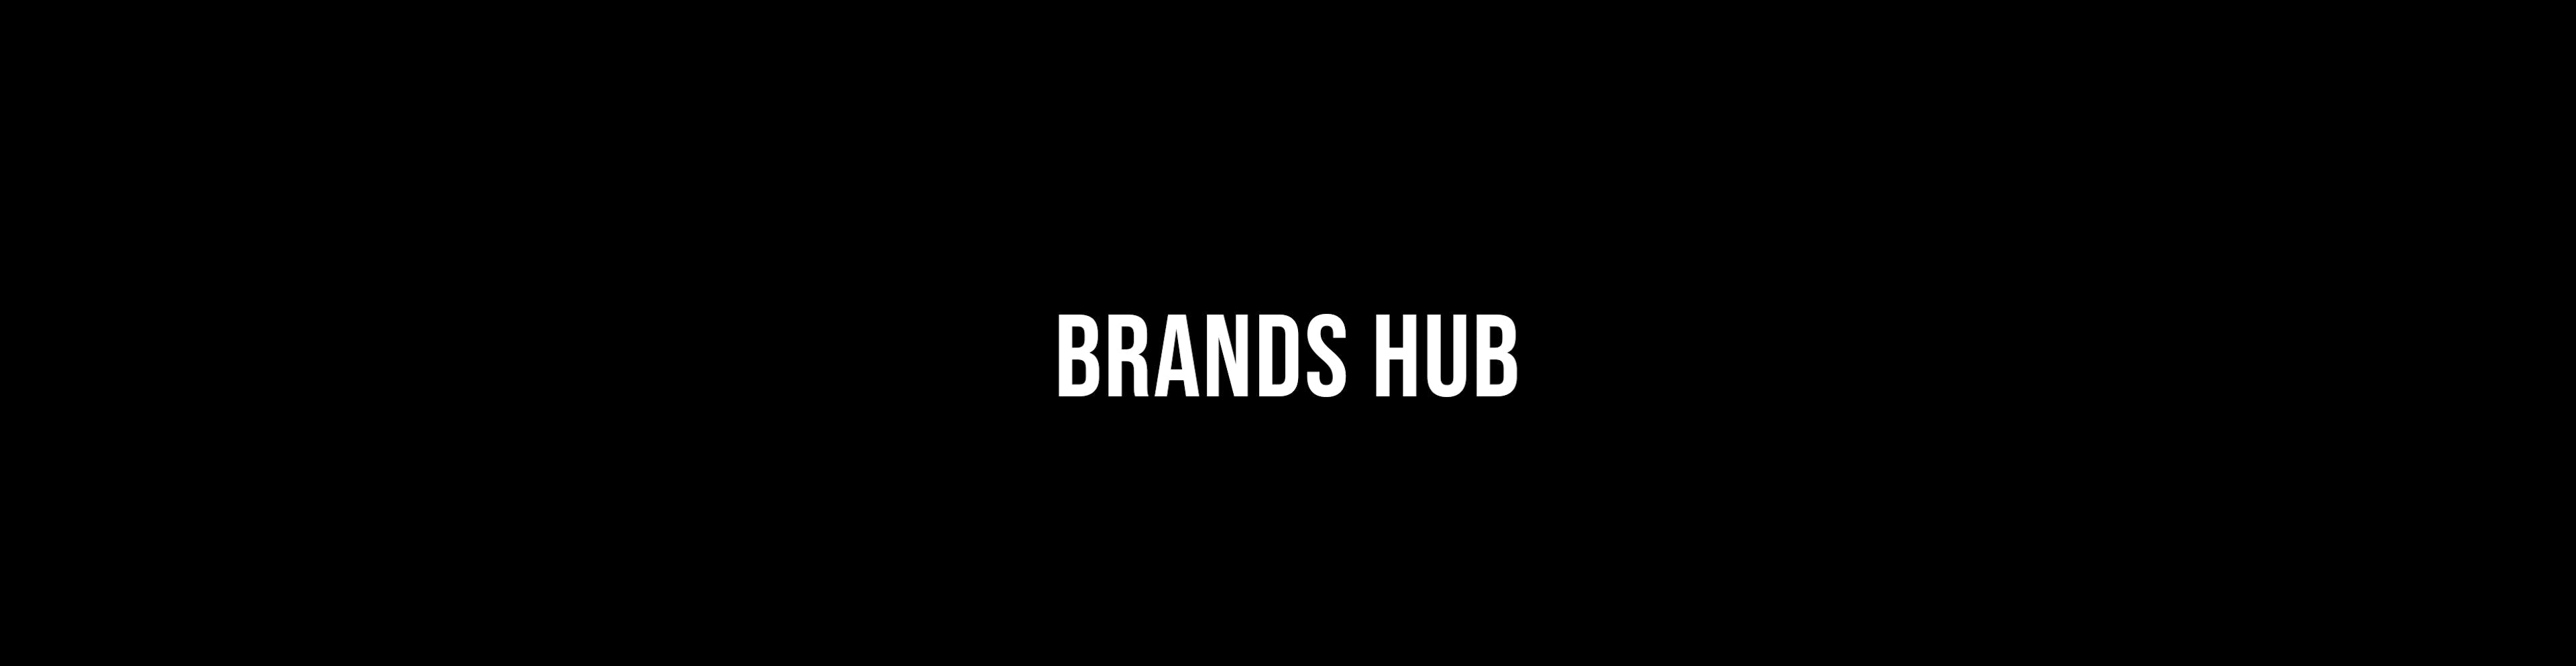  Brands Hub - Meerub